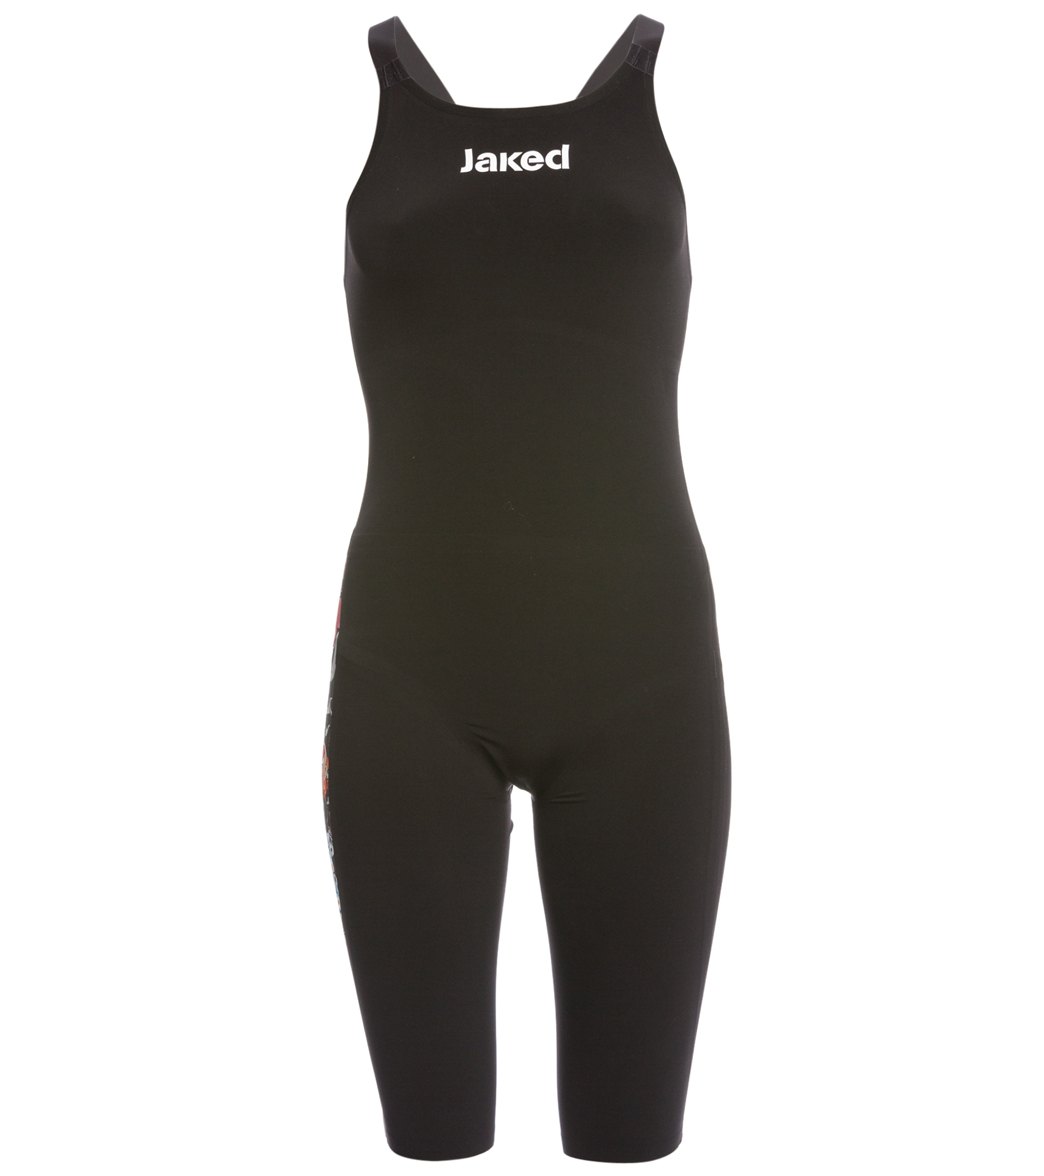 Jaked Women's Jkeel R & r Open Back Kneeskin Tech Suit Swimsuit - Black/Red 30 Elastane/Polyamide - Swimoutlet.com